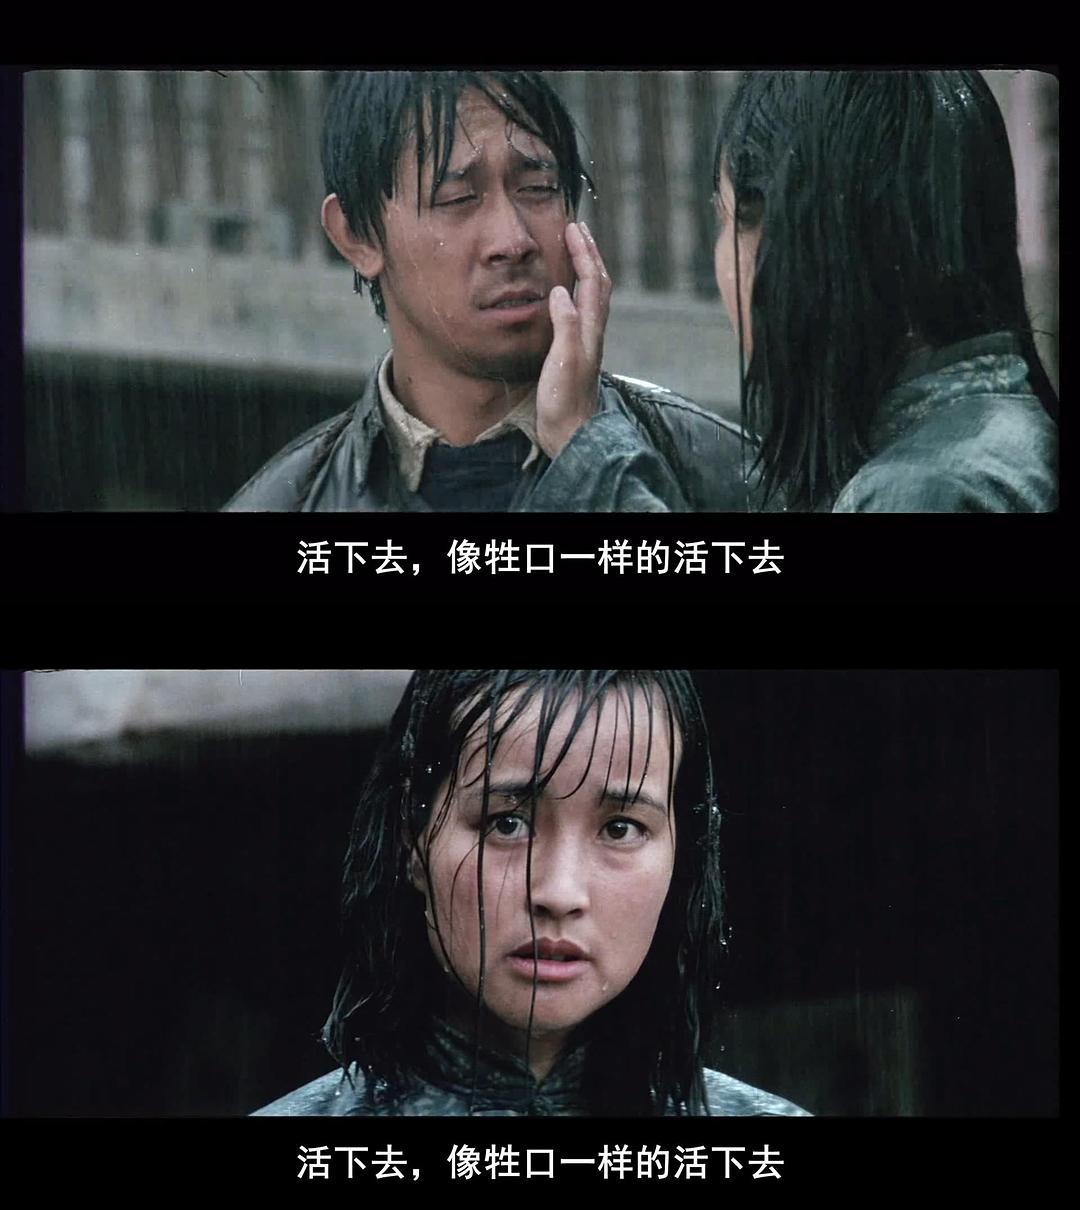 谢晋导演，姜文奉献最佳演技，《芙蓉镇》才是国产电影的巅峰-正说清代十二朝-正说清代十二朝-哔哩哔哩视频